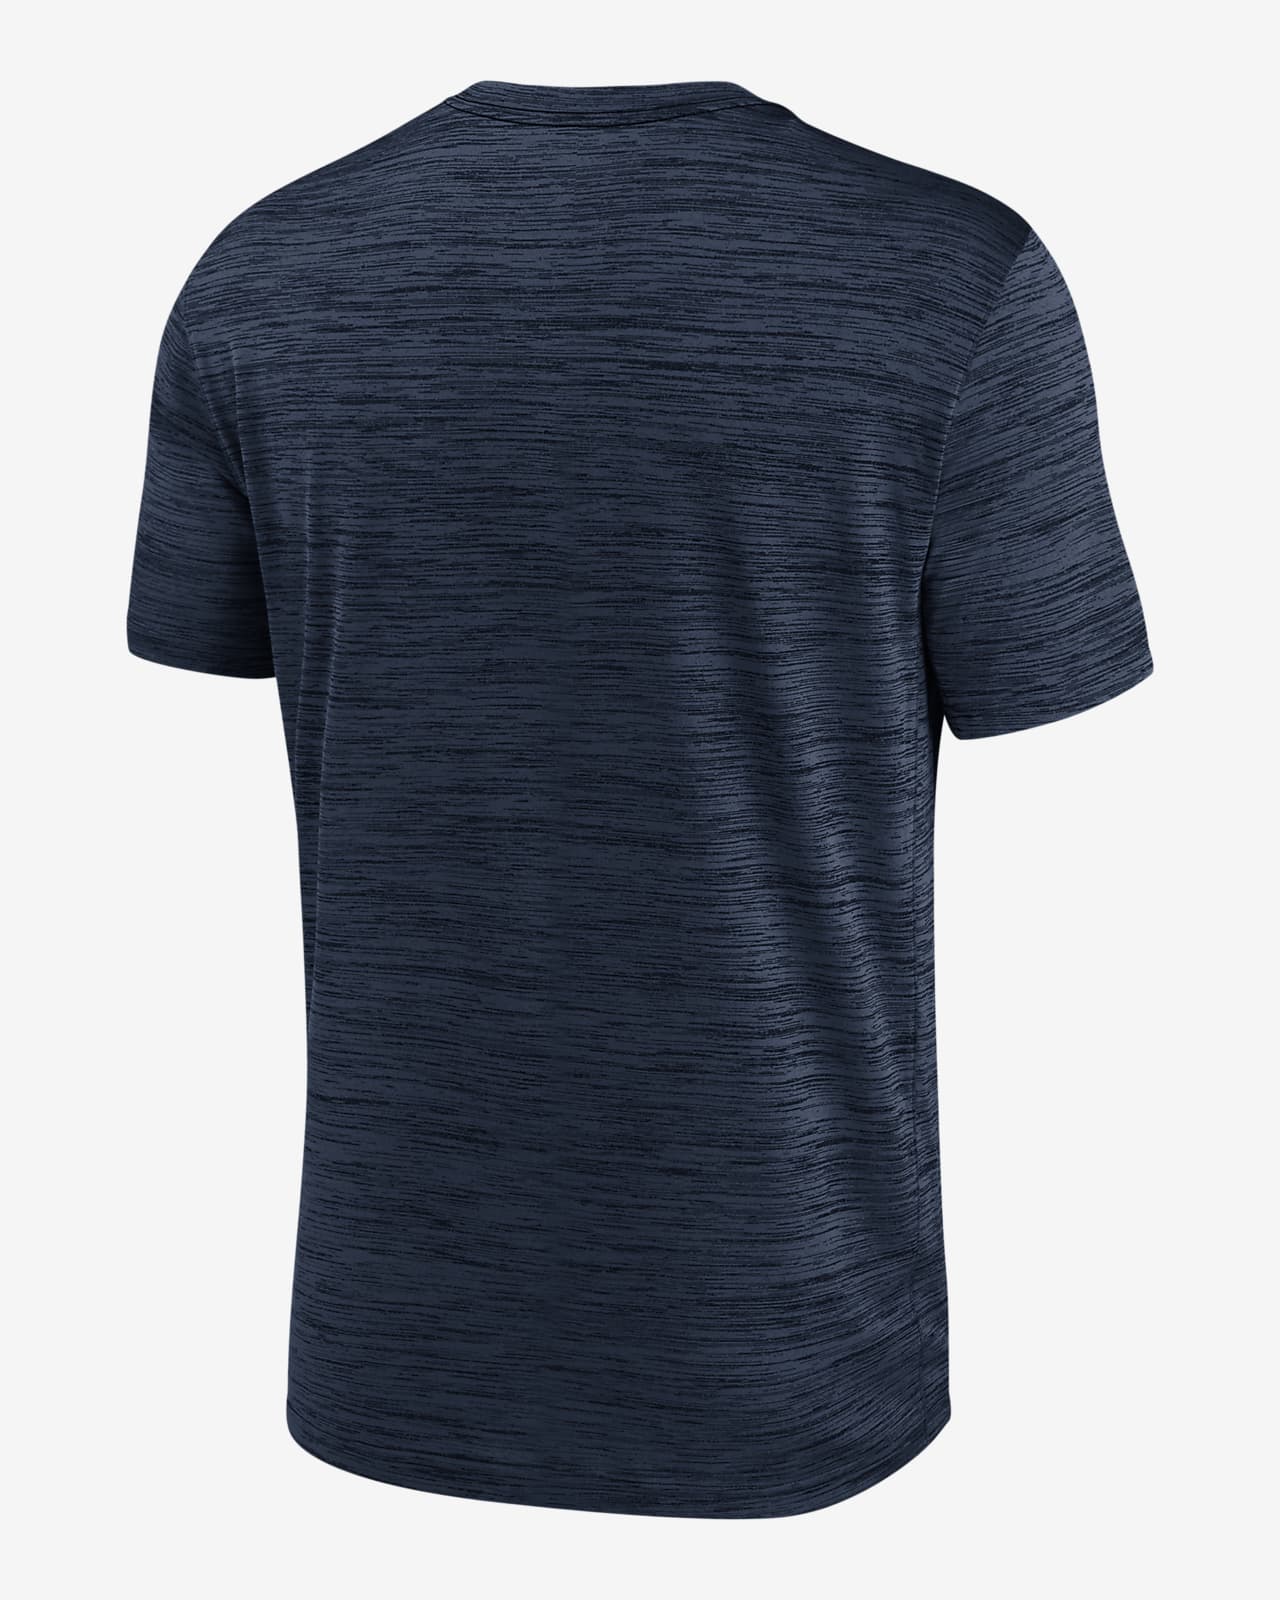 Men's Nike Navy Atlanta Braves Logo Velocity Performance T-Shirt